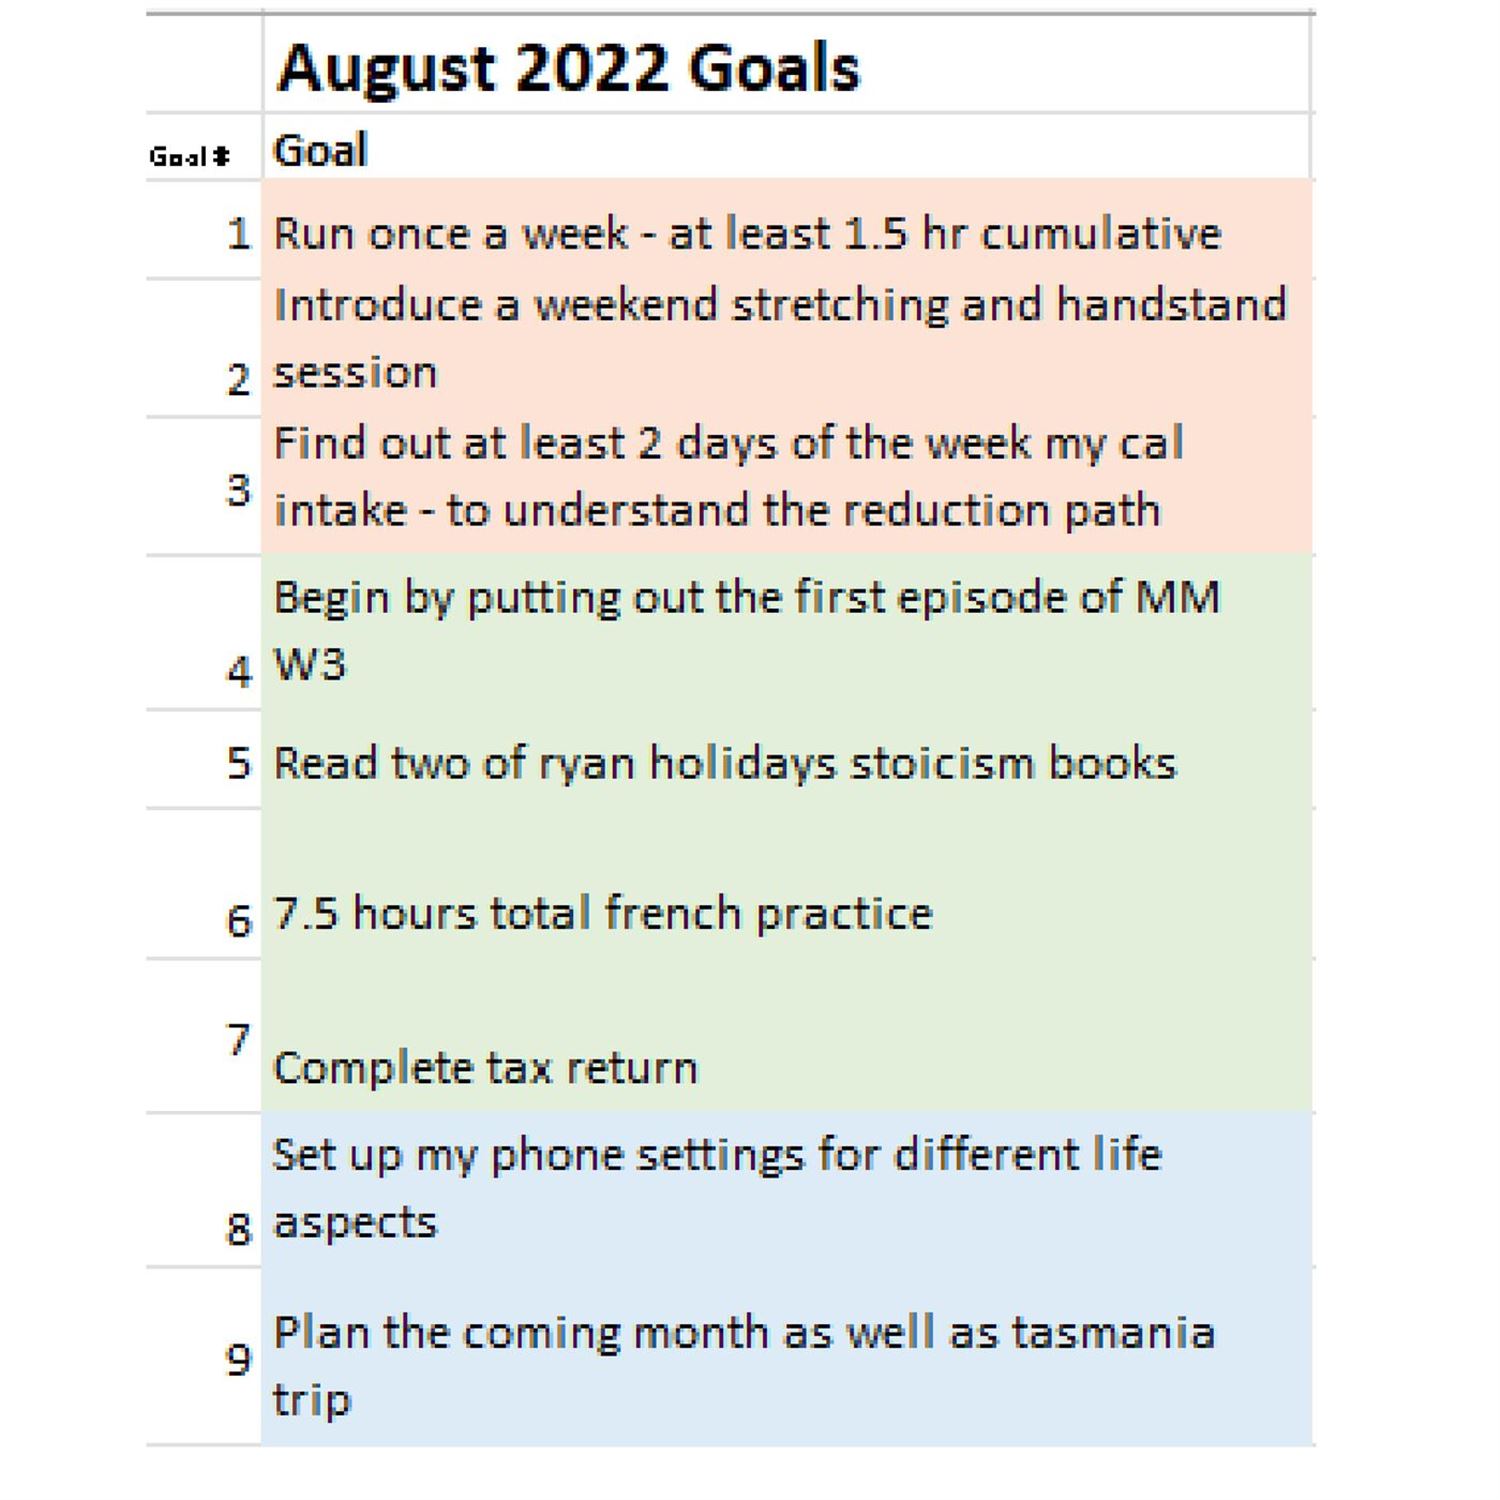 Juan's August Goals